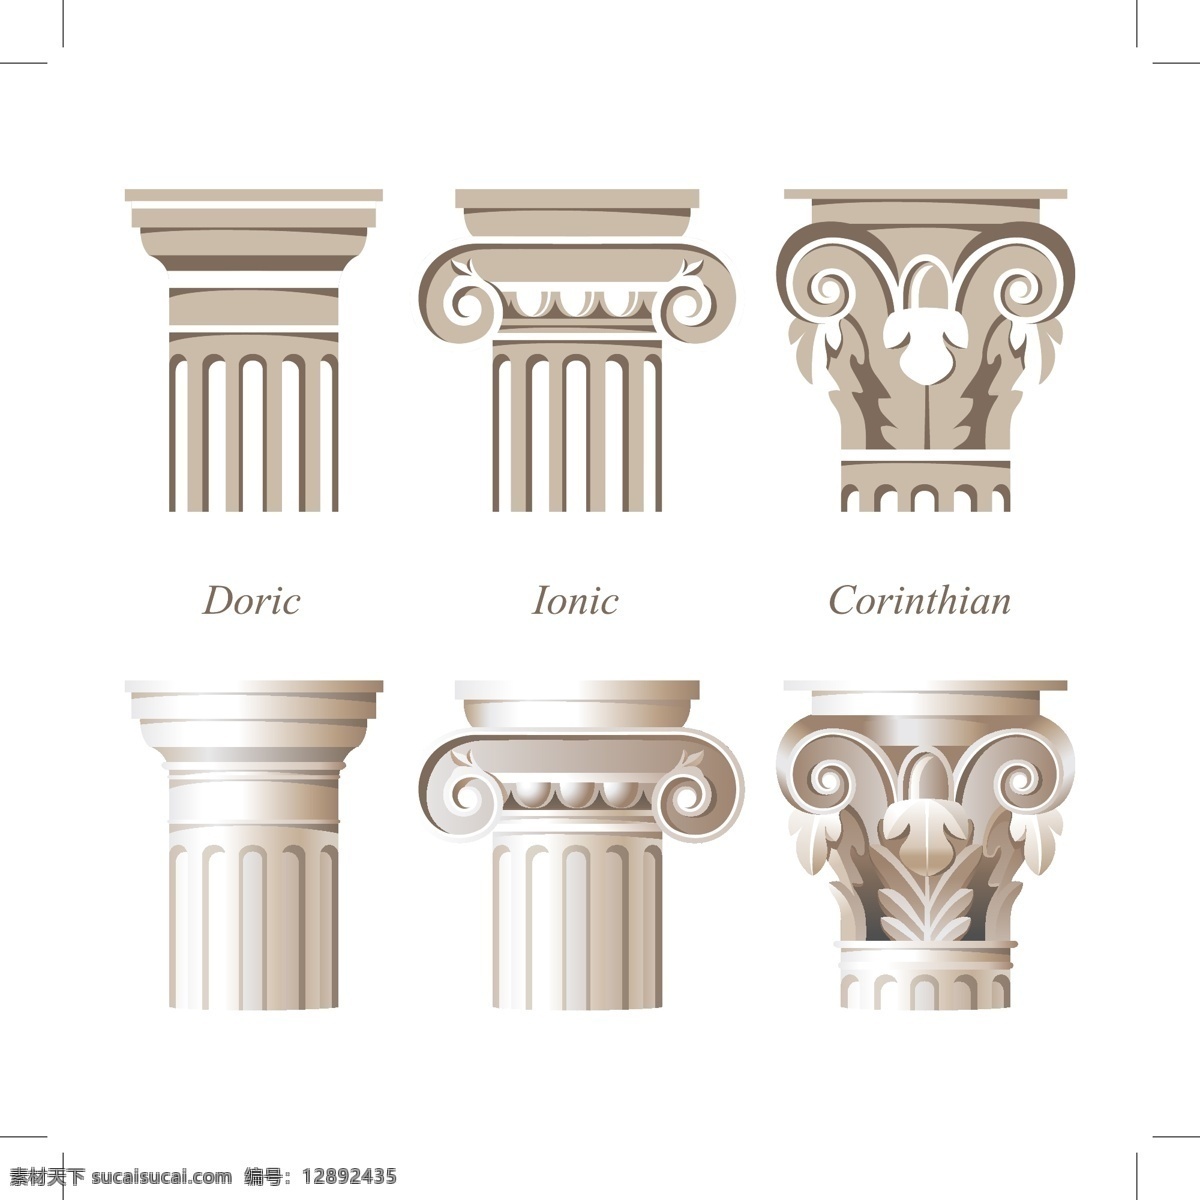 罗马柱 欧洲 花纹 石柱 雕刻 石刻 手绘 建筑材料 矢量 环境设计 建筑设计